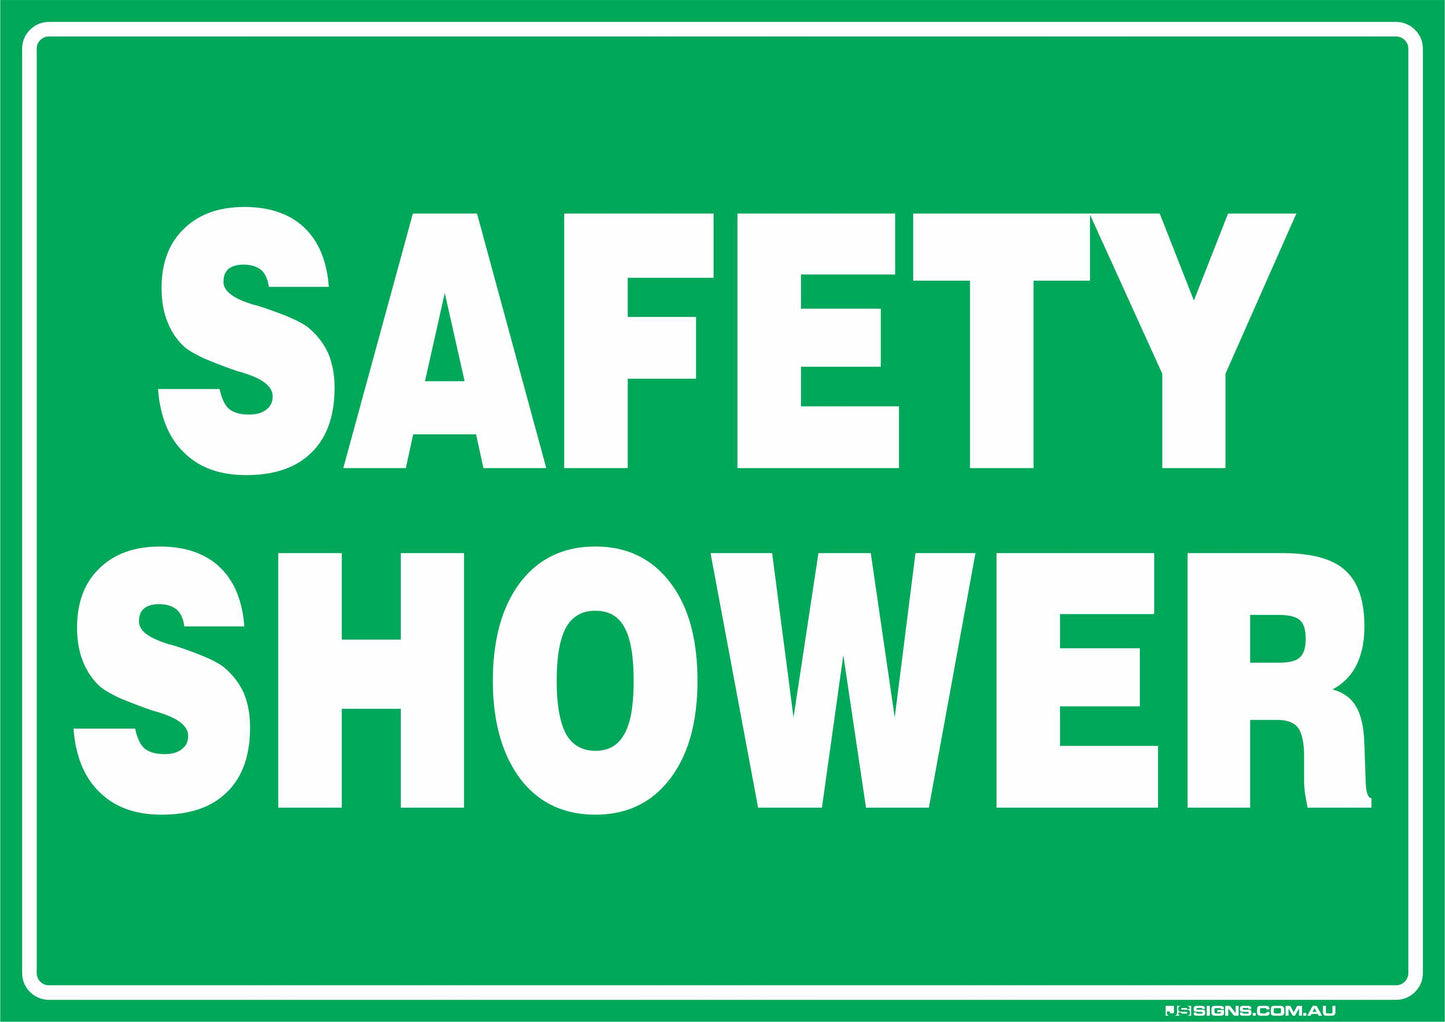 Safety Shower